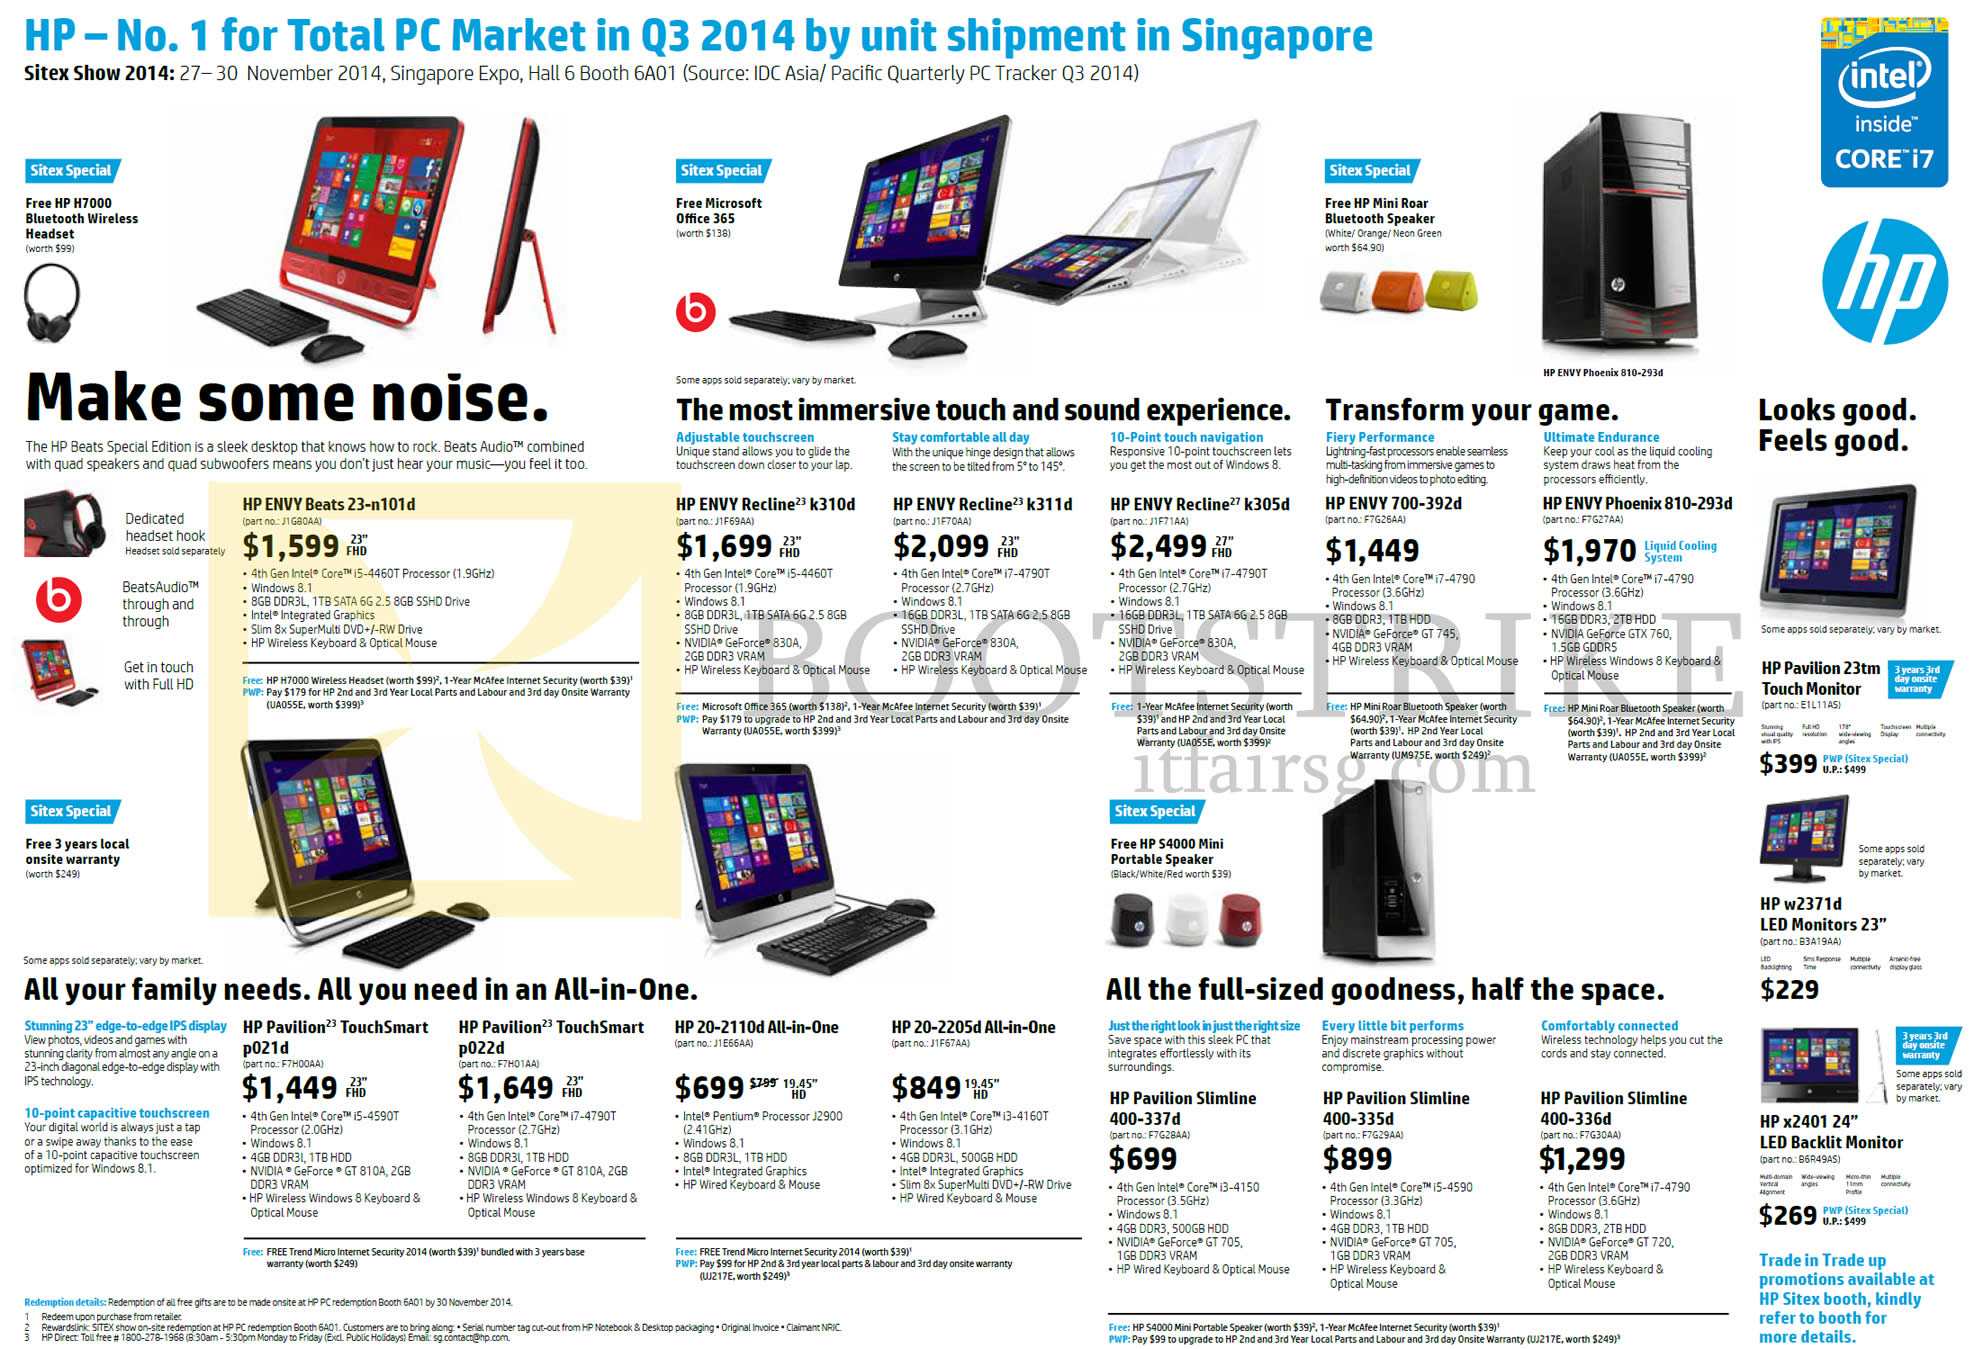 SITEX 2014 price list image brochure of HP AIO Desktop PCs, Monitors, Envy, Pavilion, Envy Recline, 23-n101d, K310d, K311d, K305d, 700-392d, 810-293d, P021d, P022d, 20-2110d, 20-2205d, X2401, W2371d